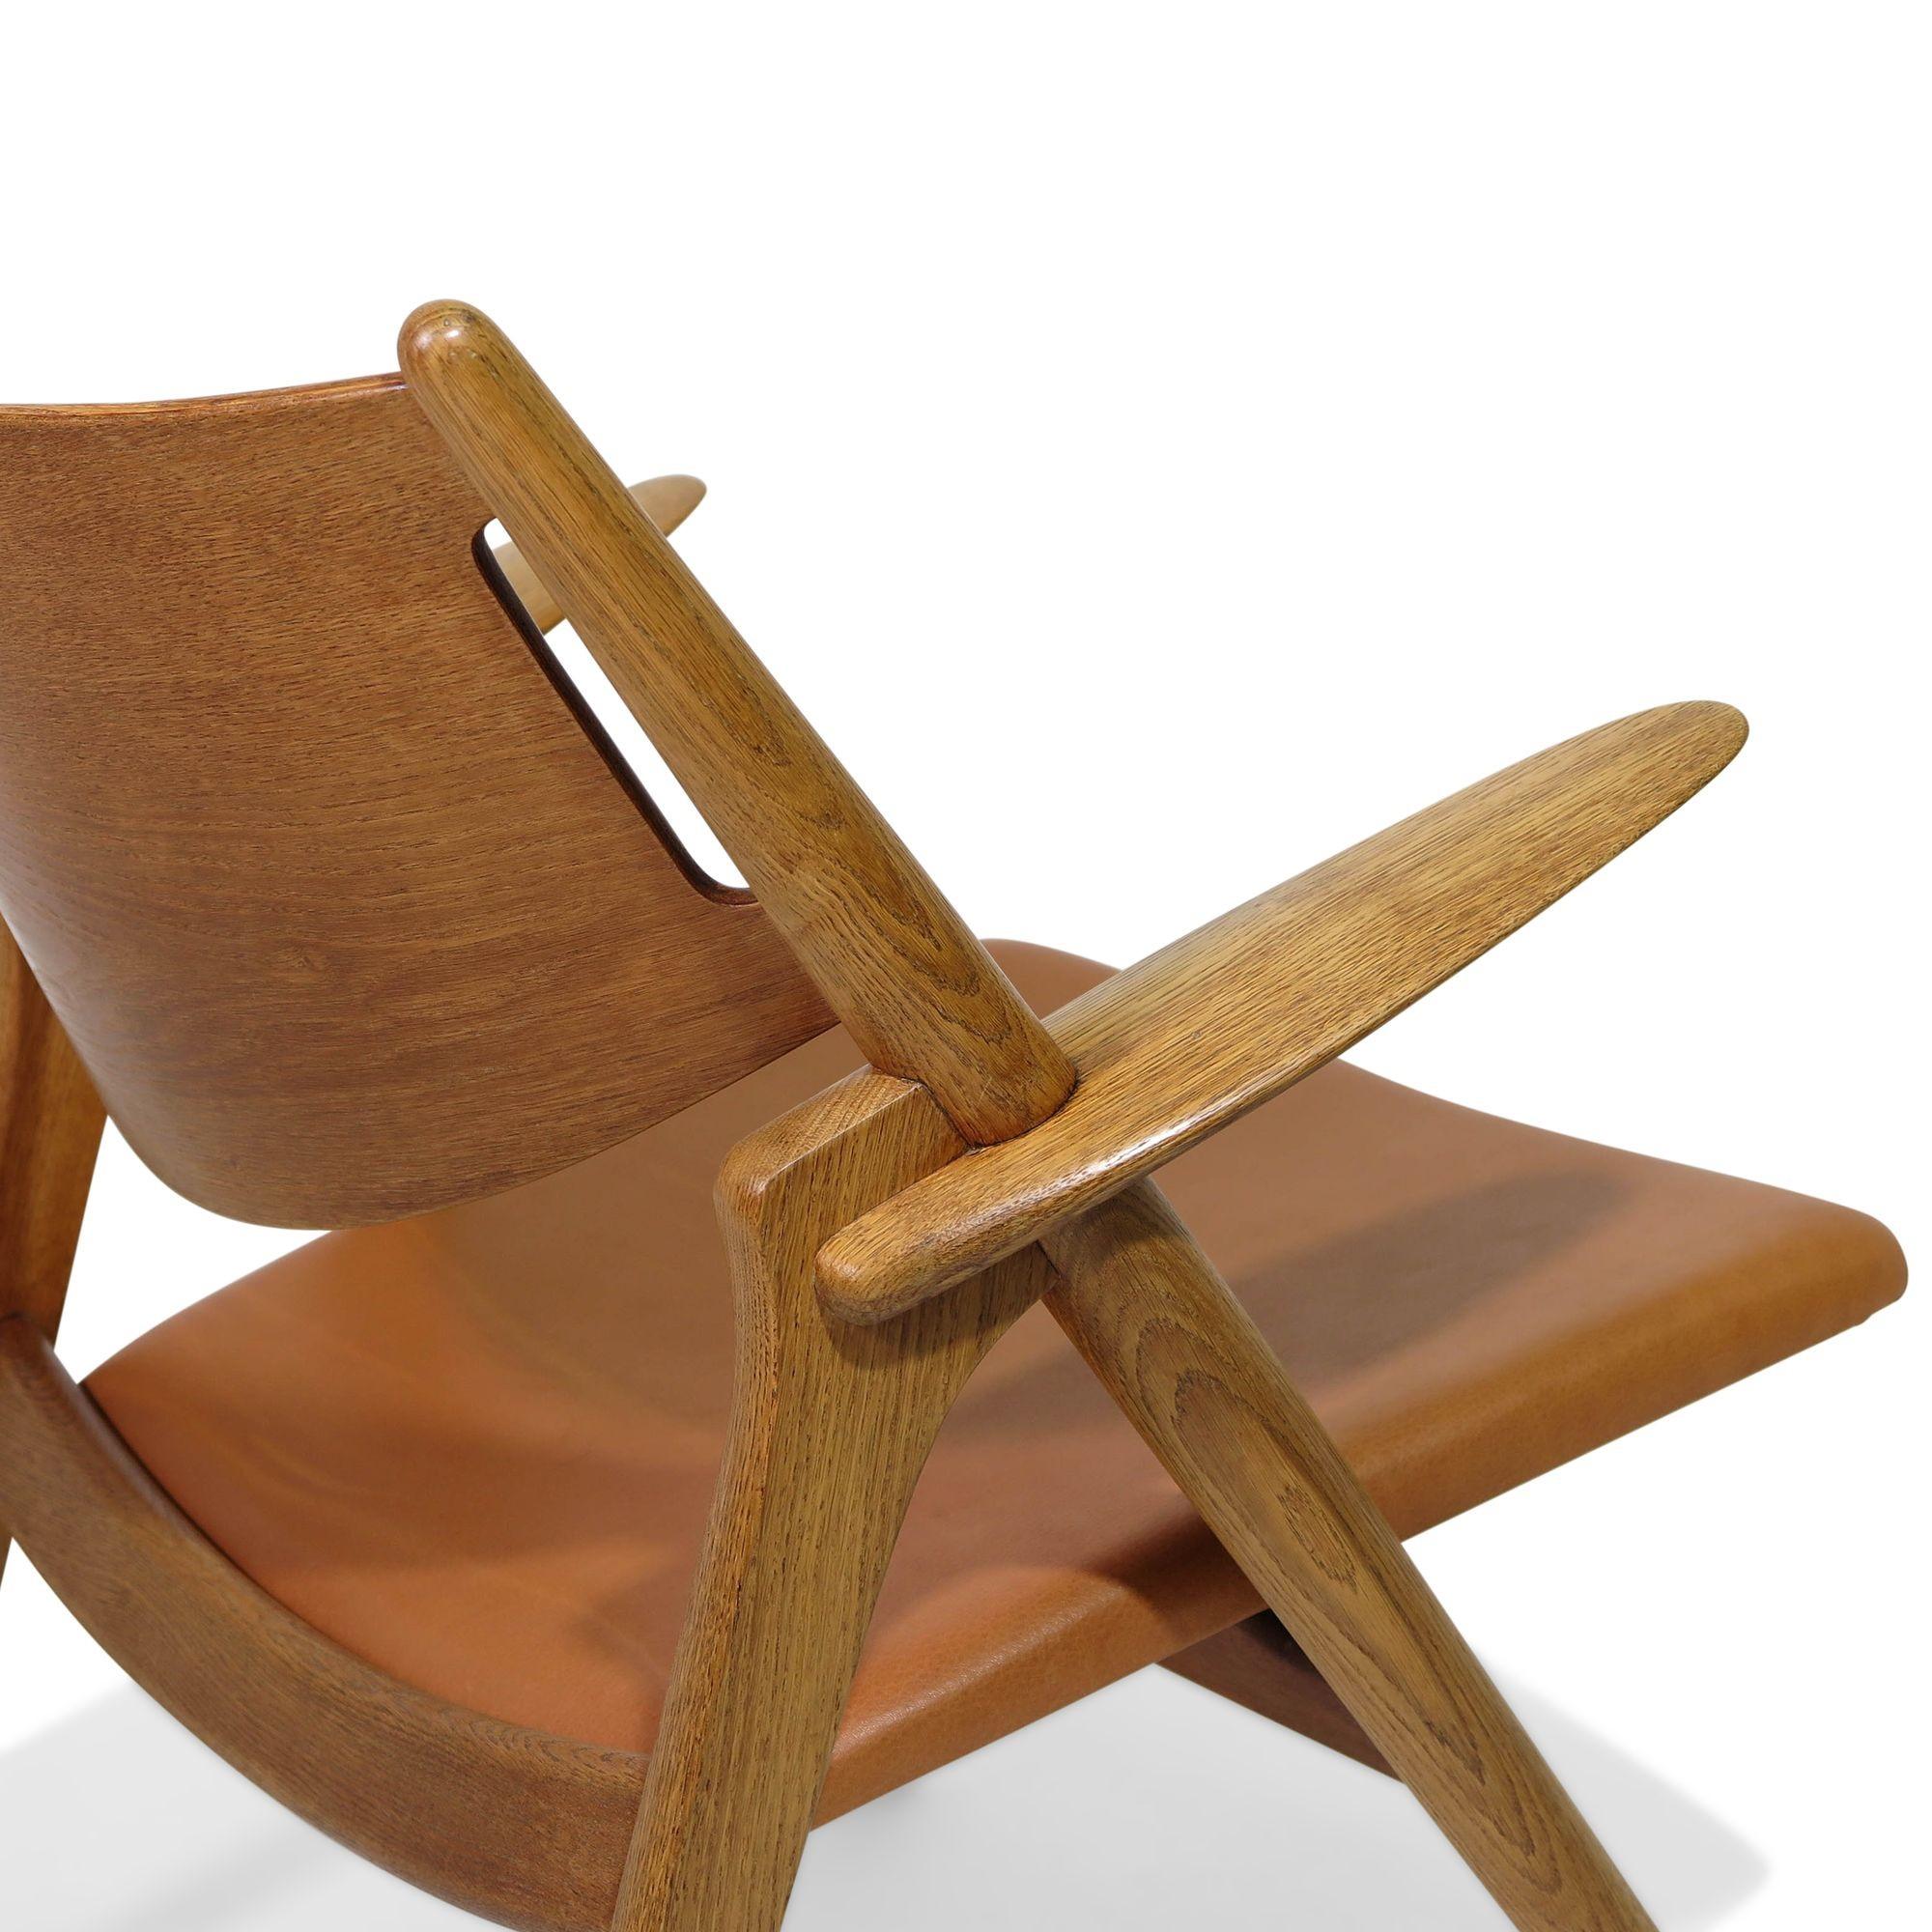 Scandinavian Modern The Sawbuck Chair, CH28, by Hans Wegner, 1951